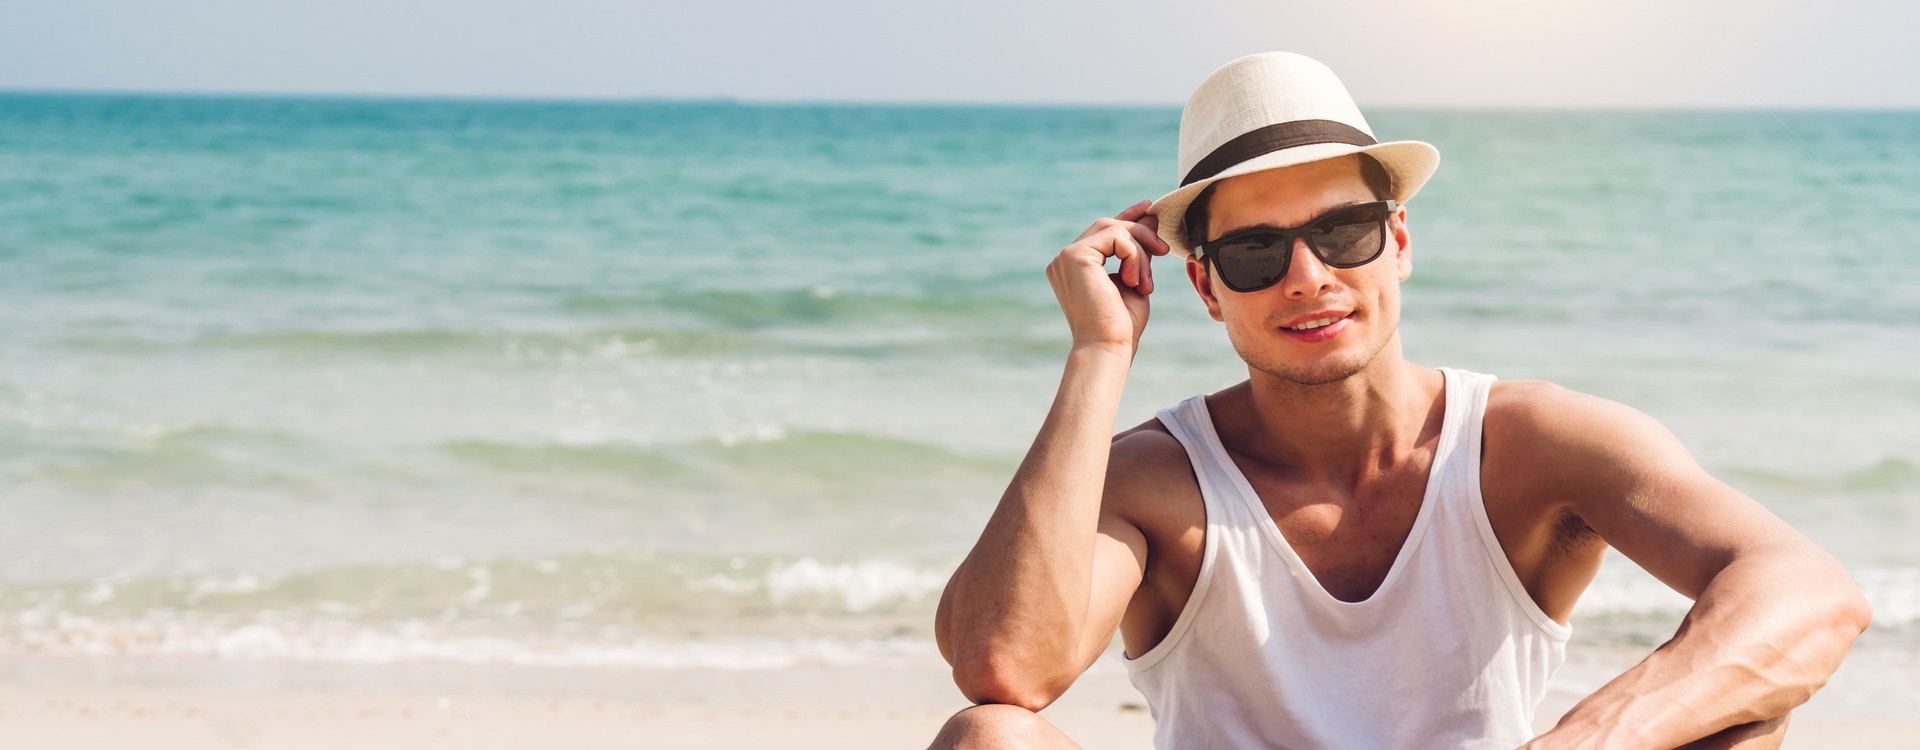 Come pulire gli occhiali in spiaggia - Eyewear Mood